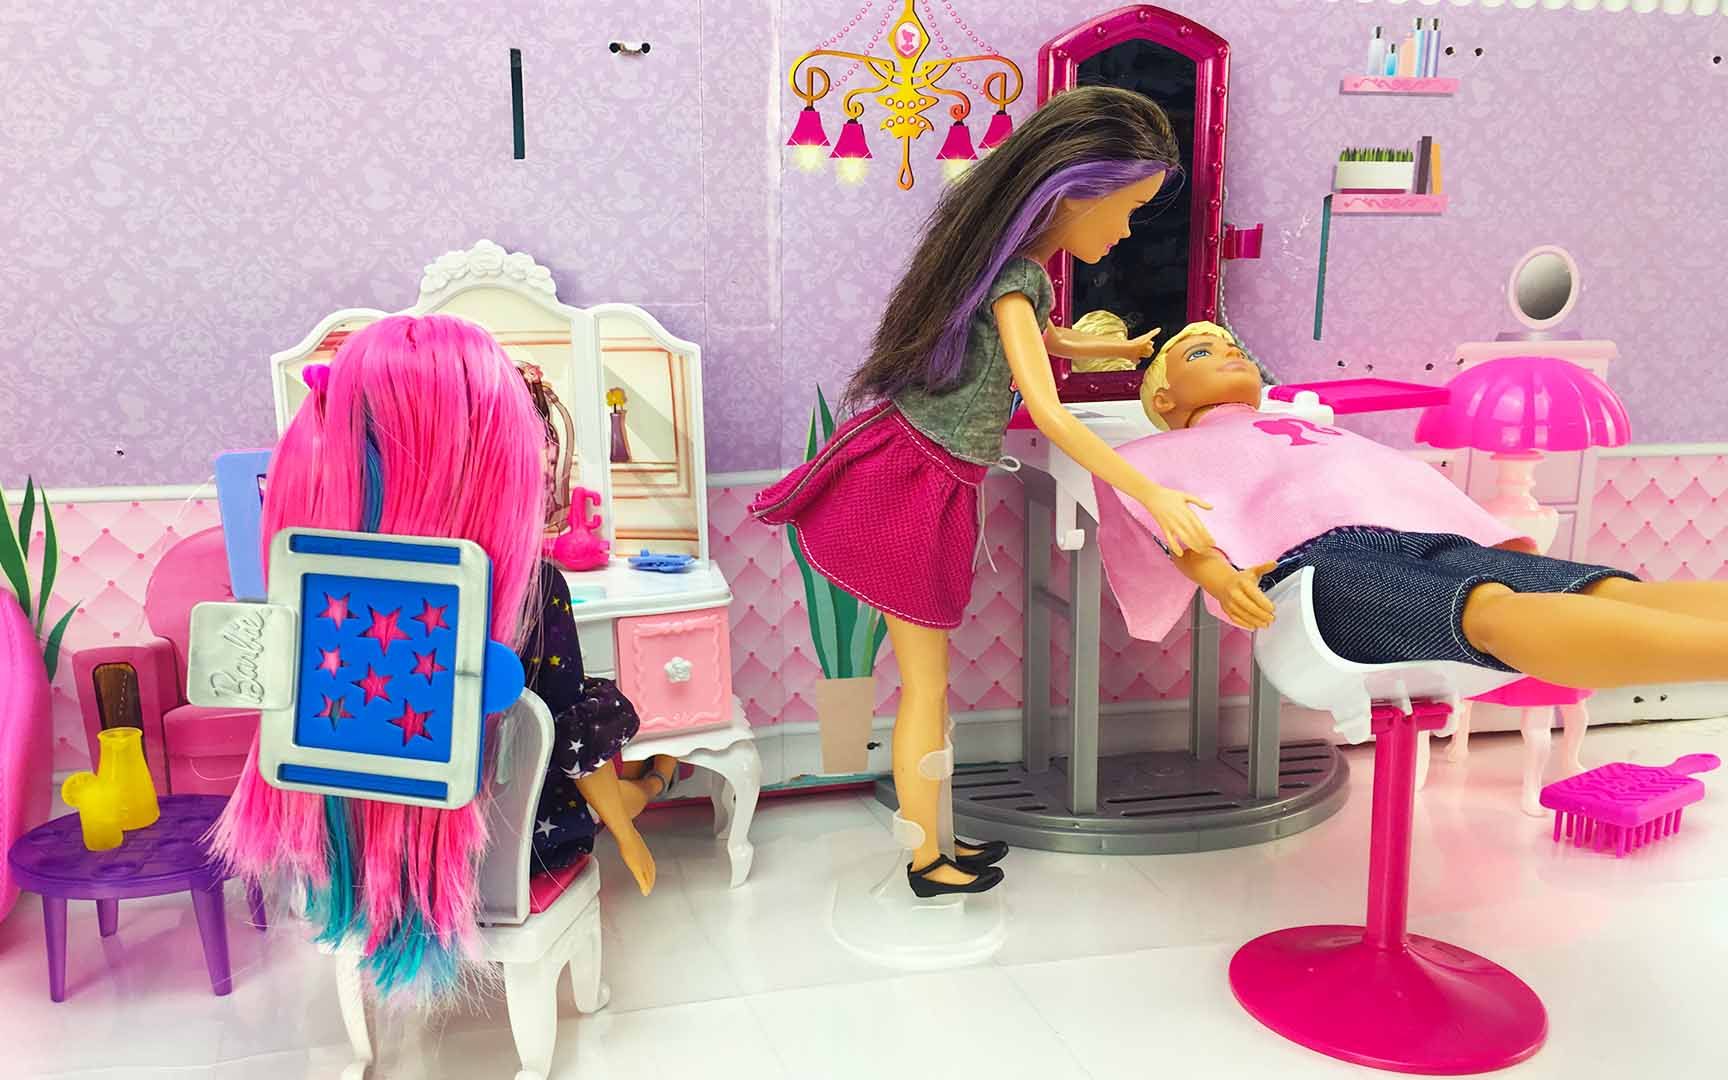 芭比娃娃理发店玩具,芭比来理发店做造型过家家玩具